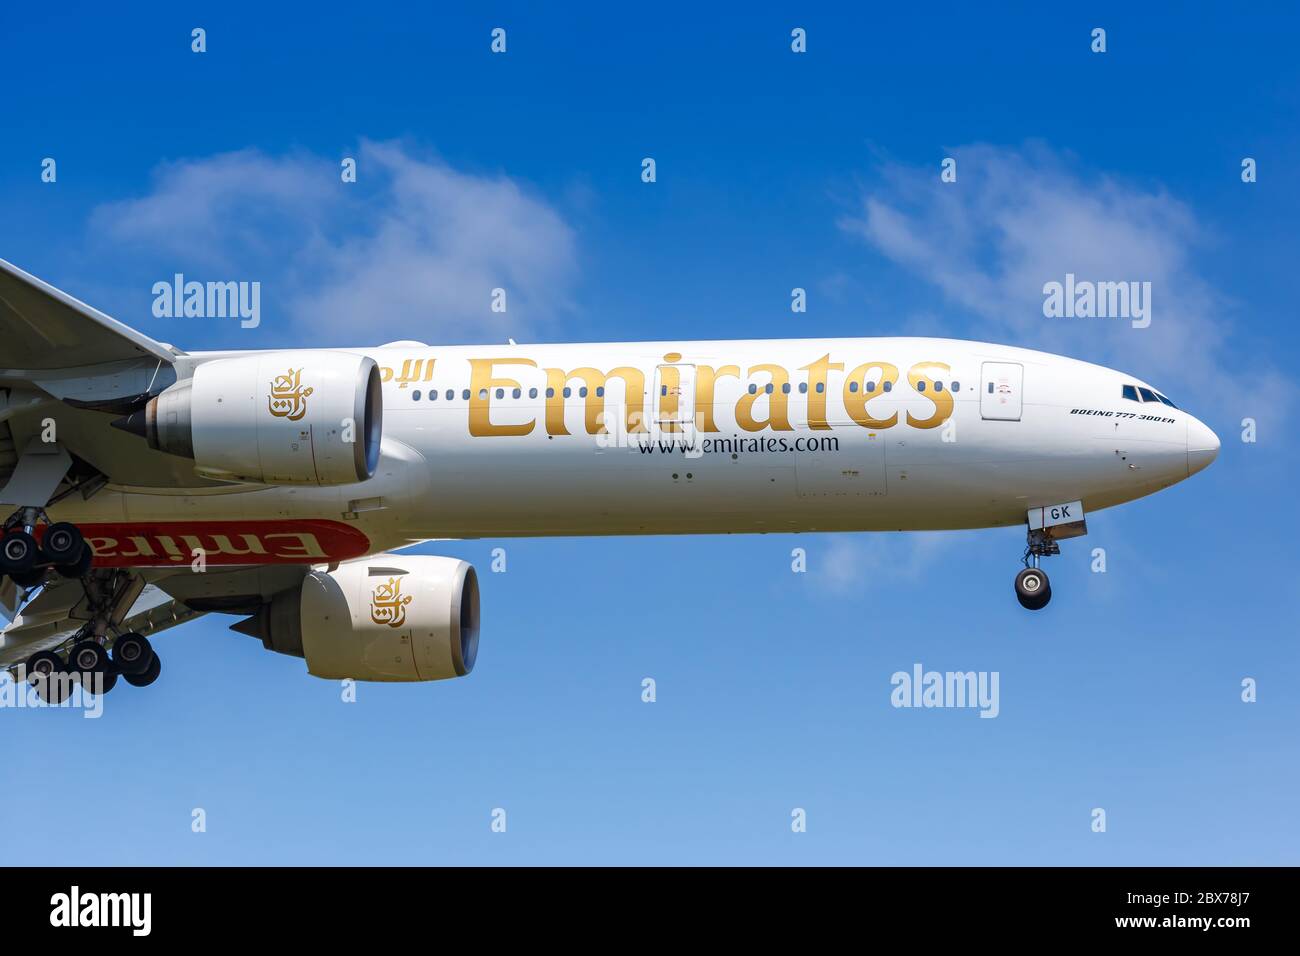 Francfort, Allemagne - 27 mai 2020 : avion Emirates Boeing 777-300ER à l'aéroport de Francfort (FRA) en Allemagne. Boeing est un fabricant américain d'avions Banque D'Images